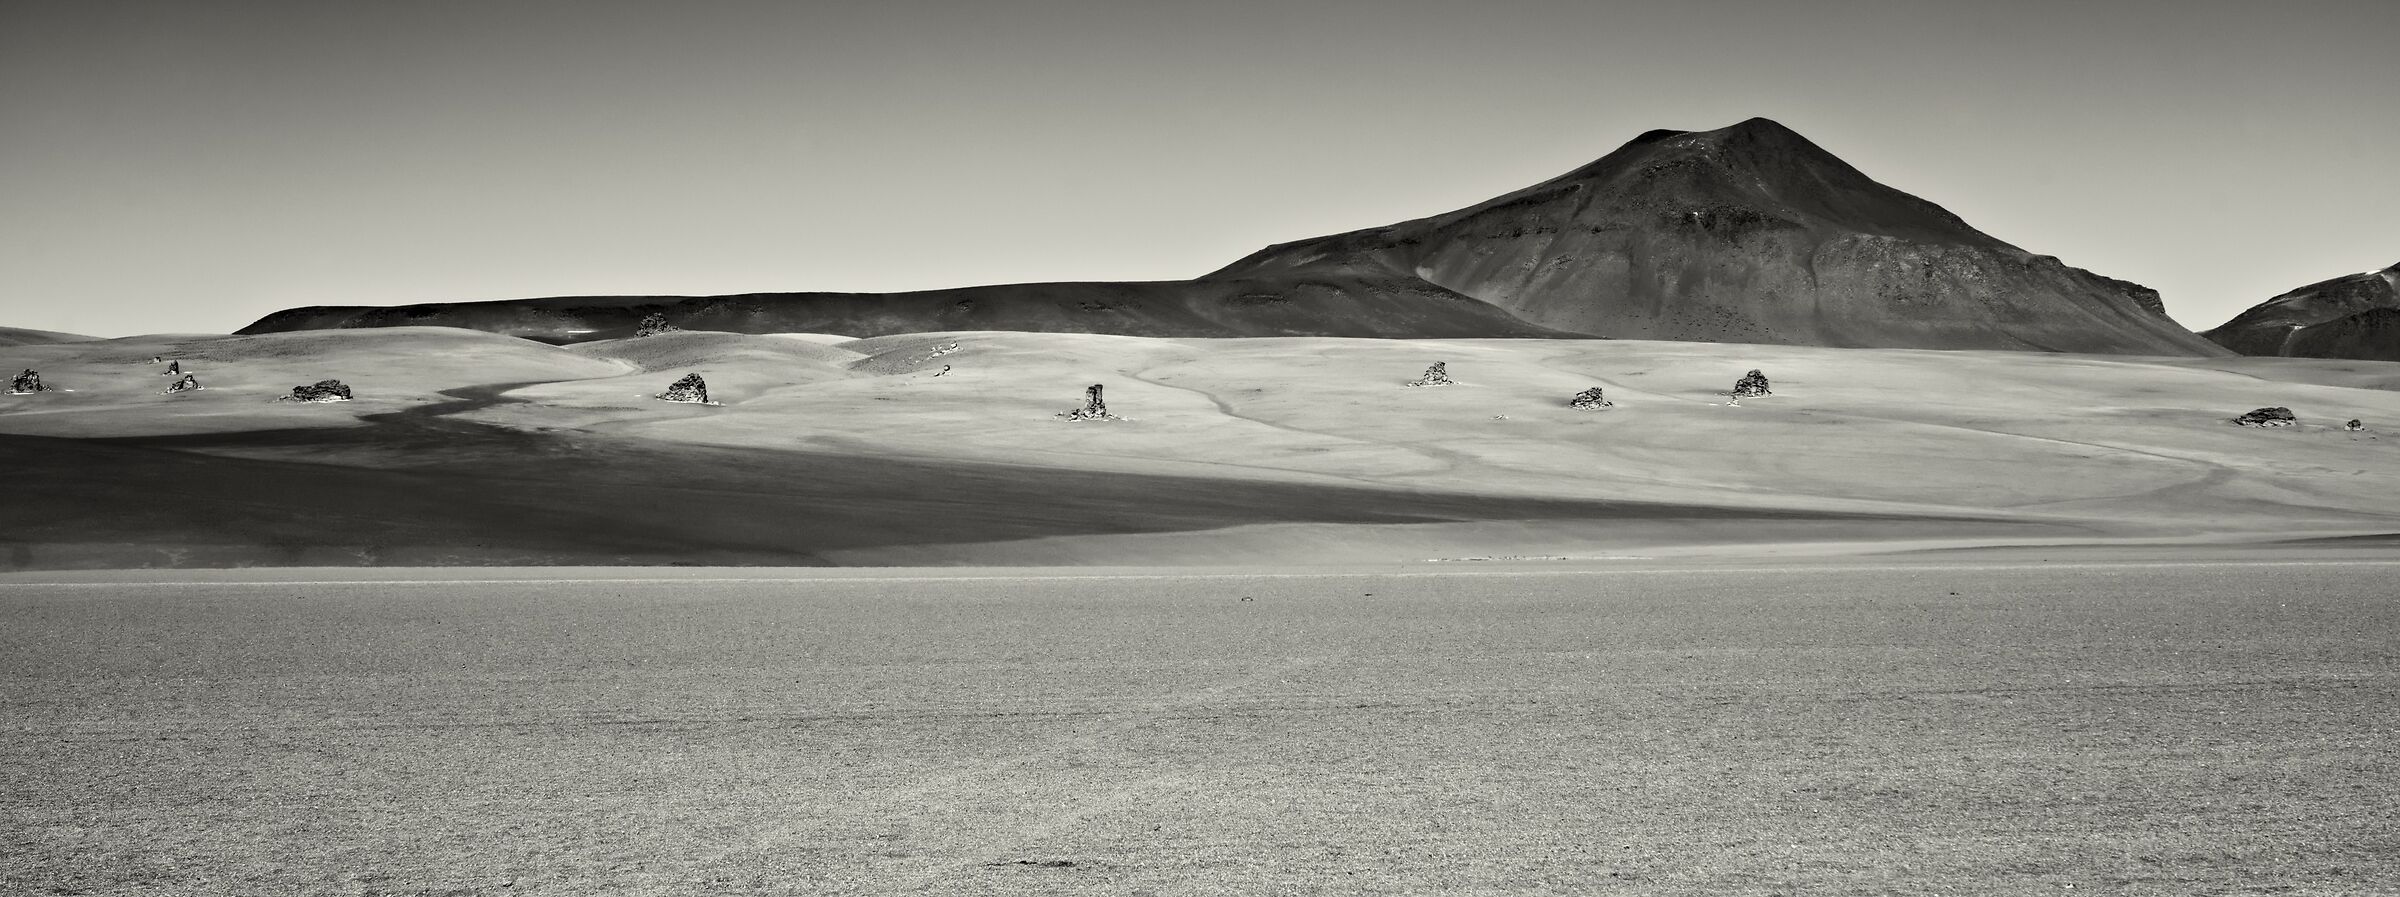 Deserto Salvador Dali, Bolivia...